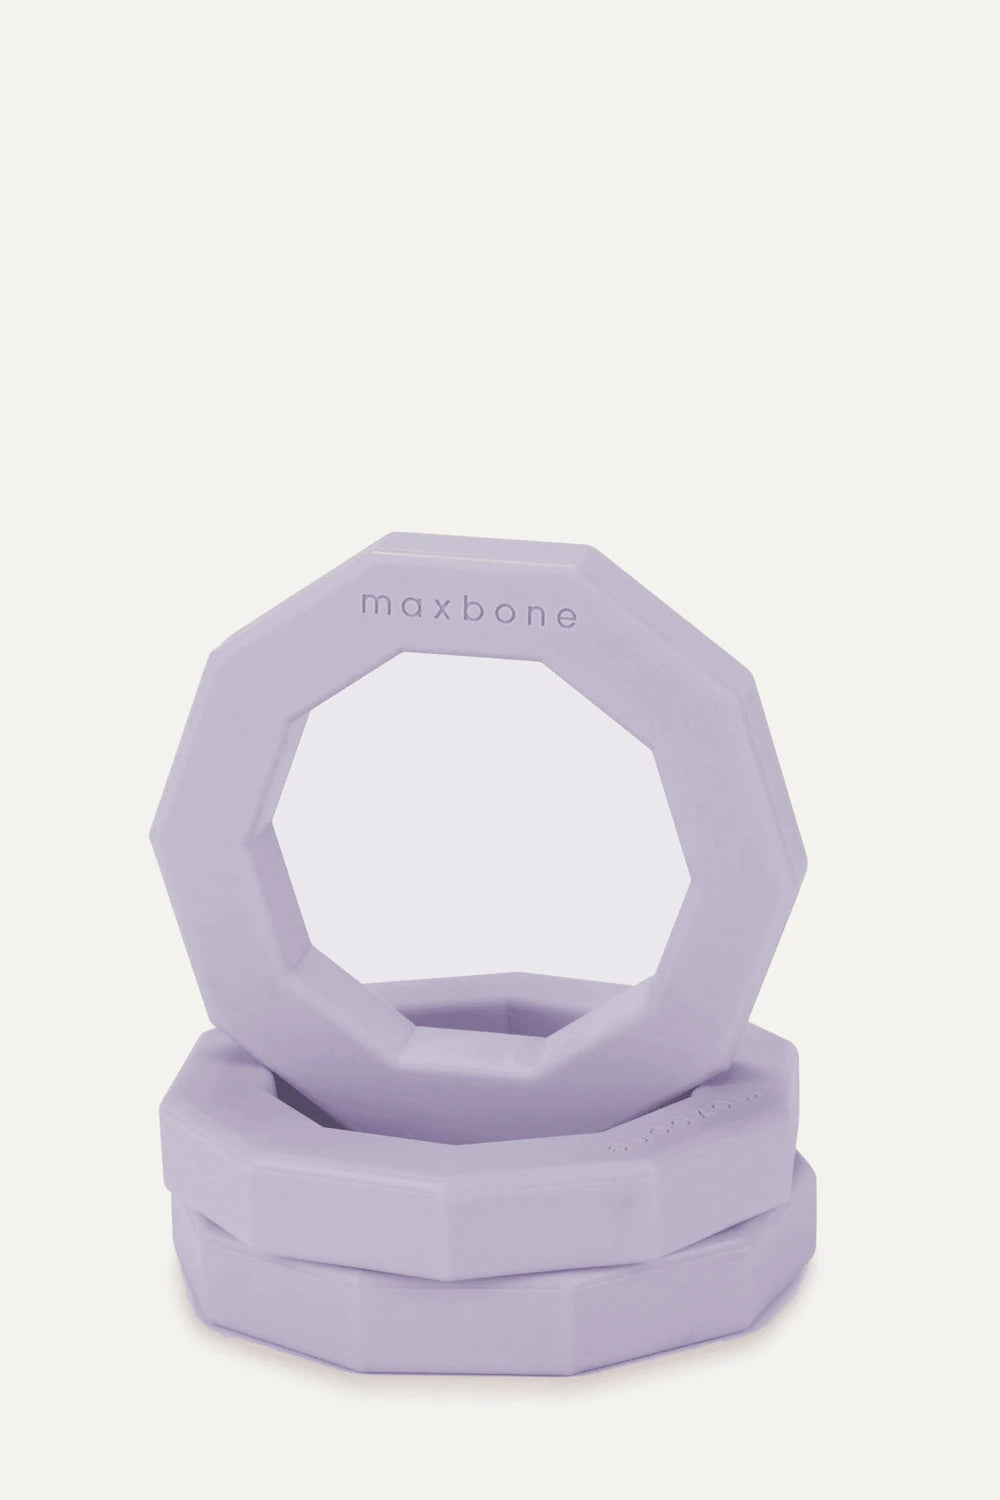 Maxbone Decagon Dog Toy Lilac/Mint